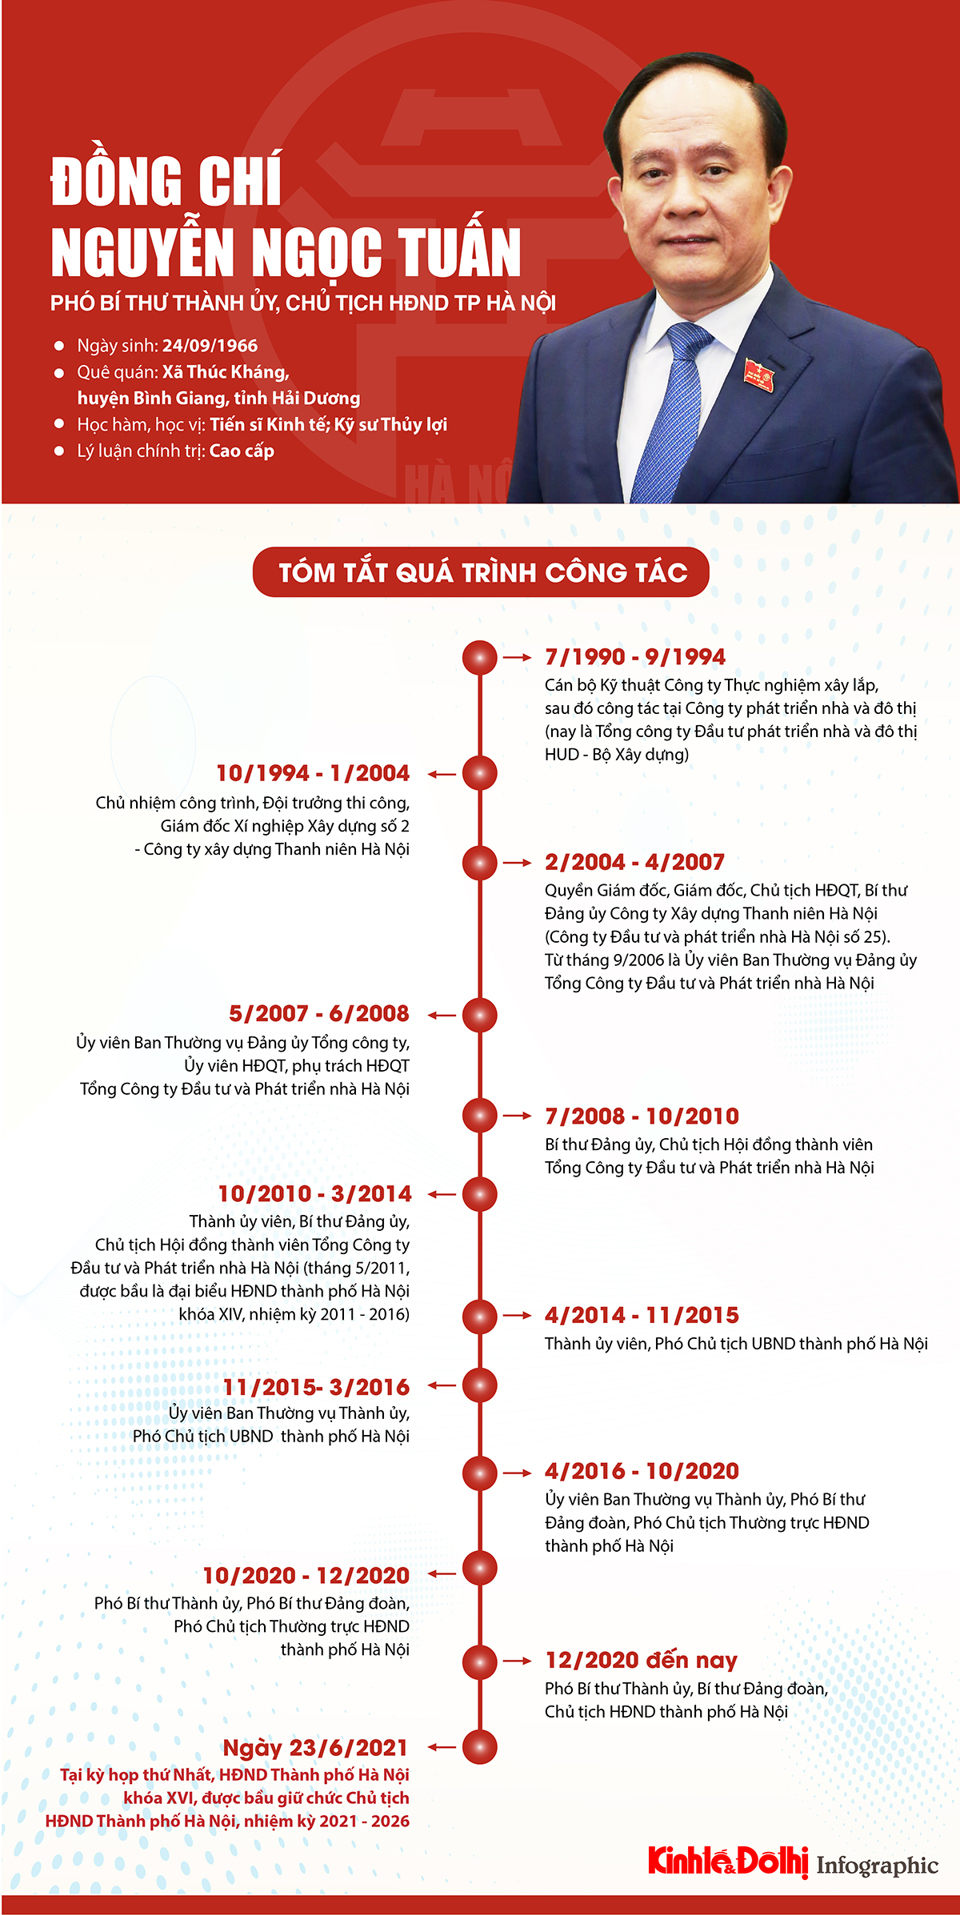 [Infographic] Chân dung Chủ tịch HĐND TP Hà Nội khóa XVI Nguyễn Ngọc Tuấn - Ảnh 1